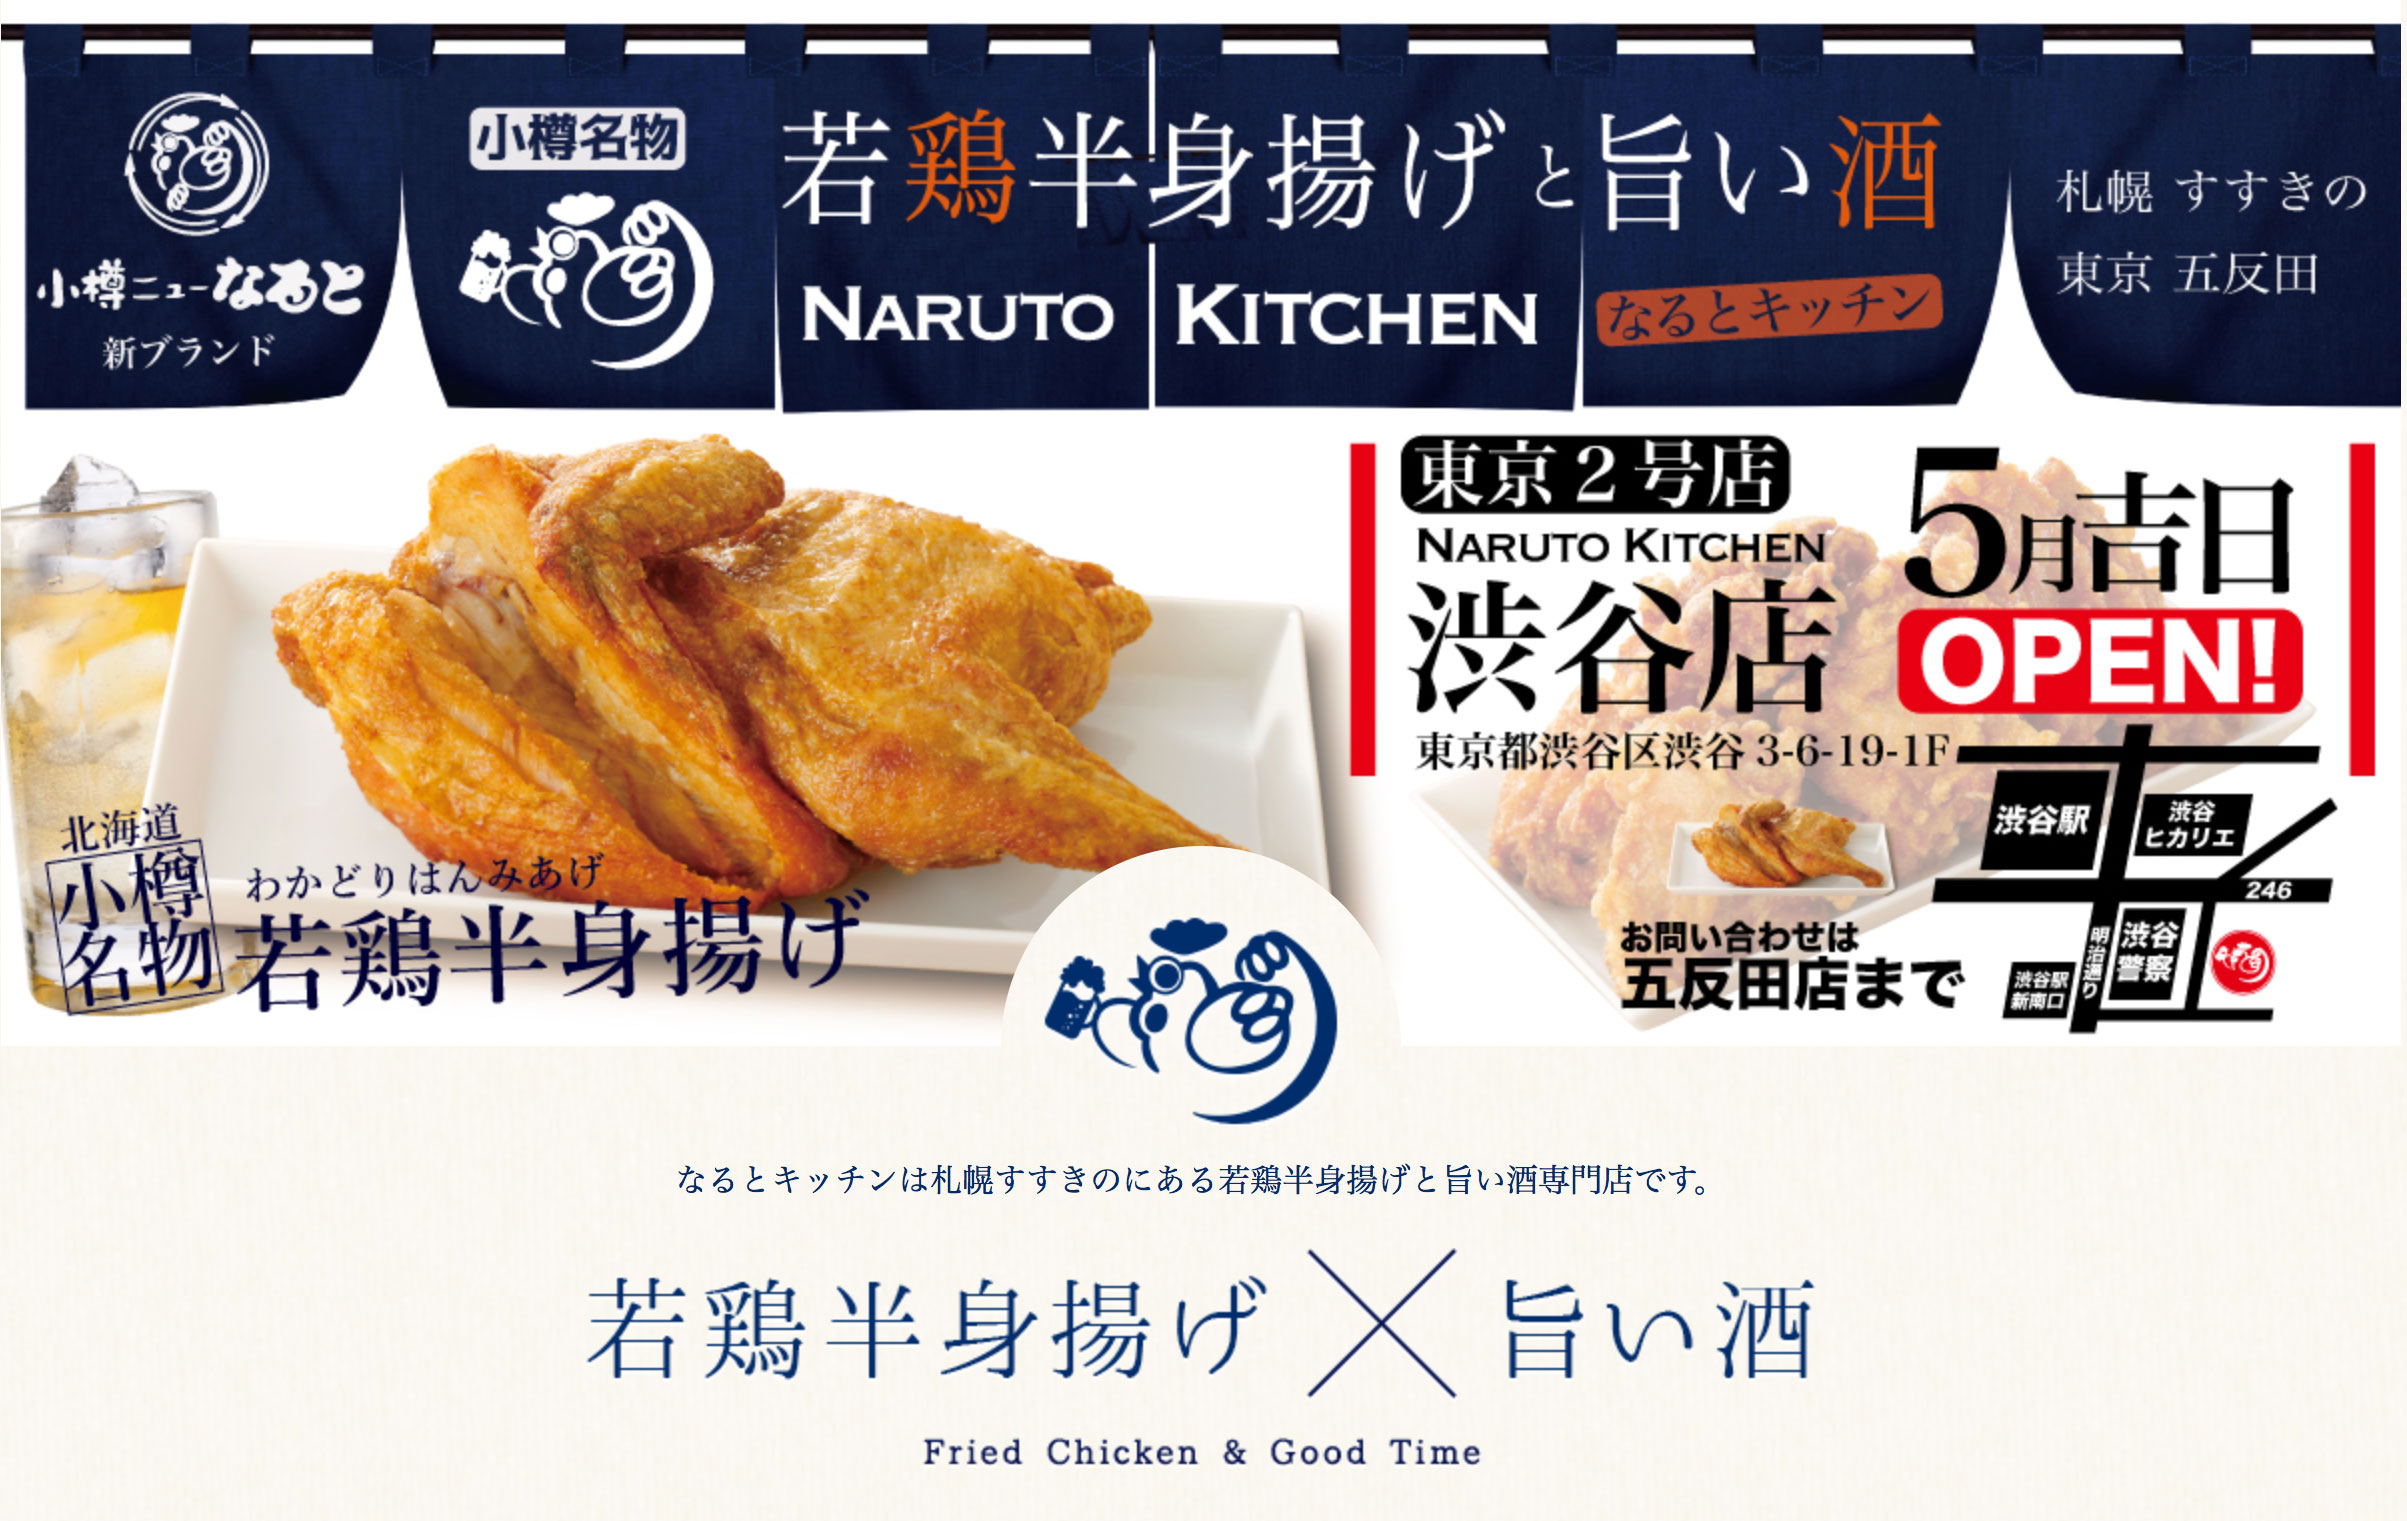 なるとキッチン 旨っ デカっ 鶏の半身揚げに食らいつく 吉川メソッドスタッフのブログ